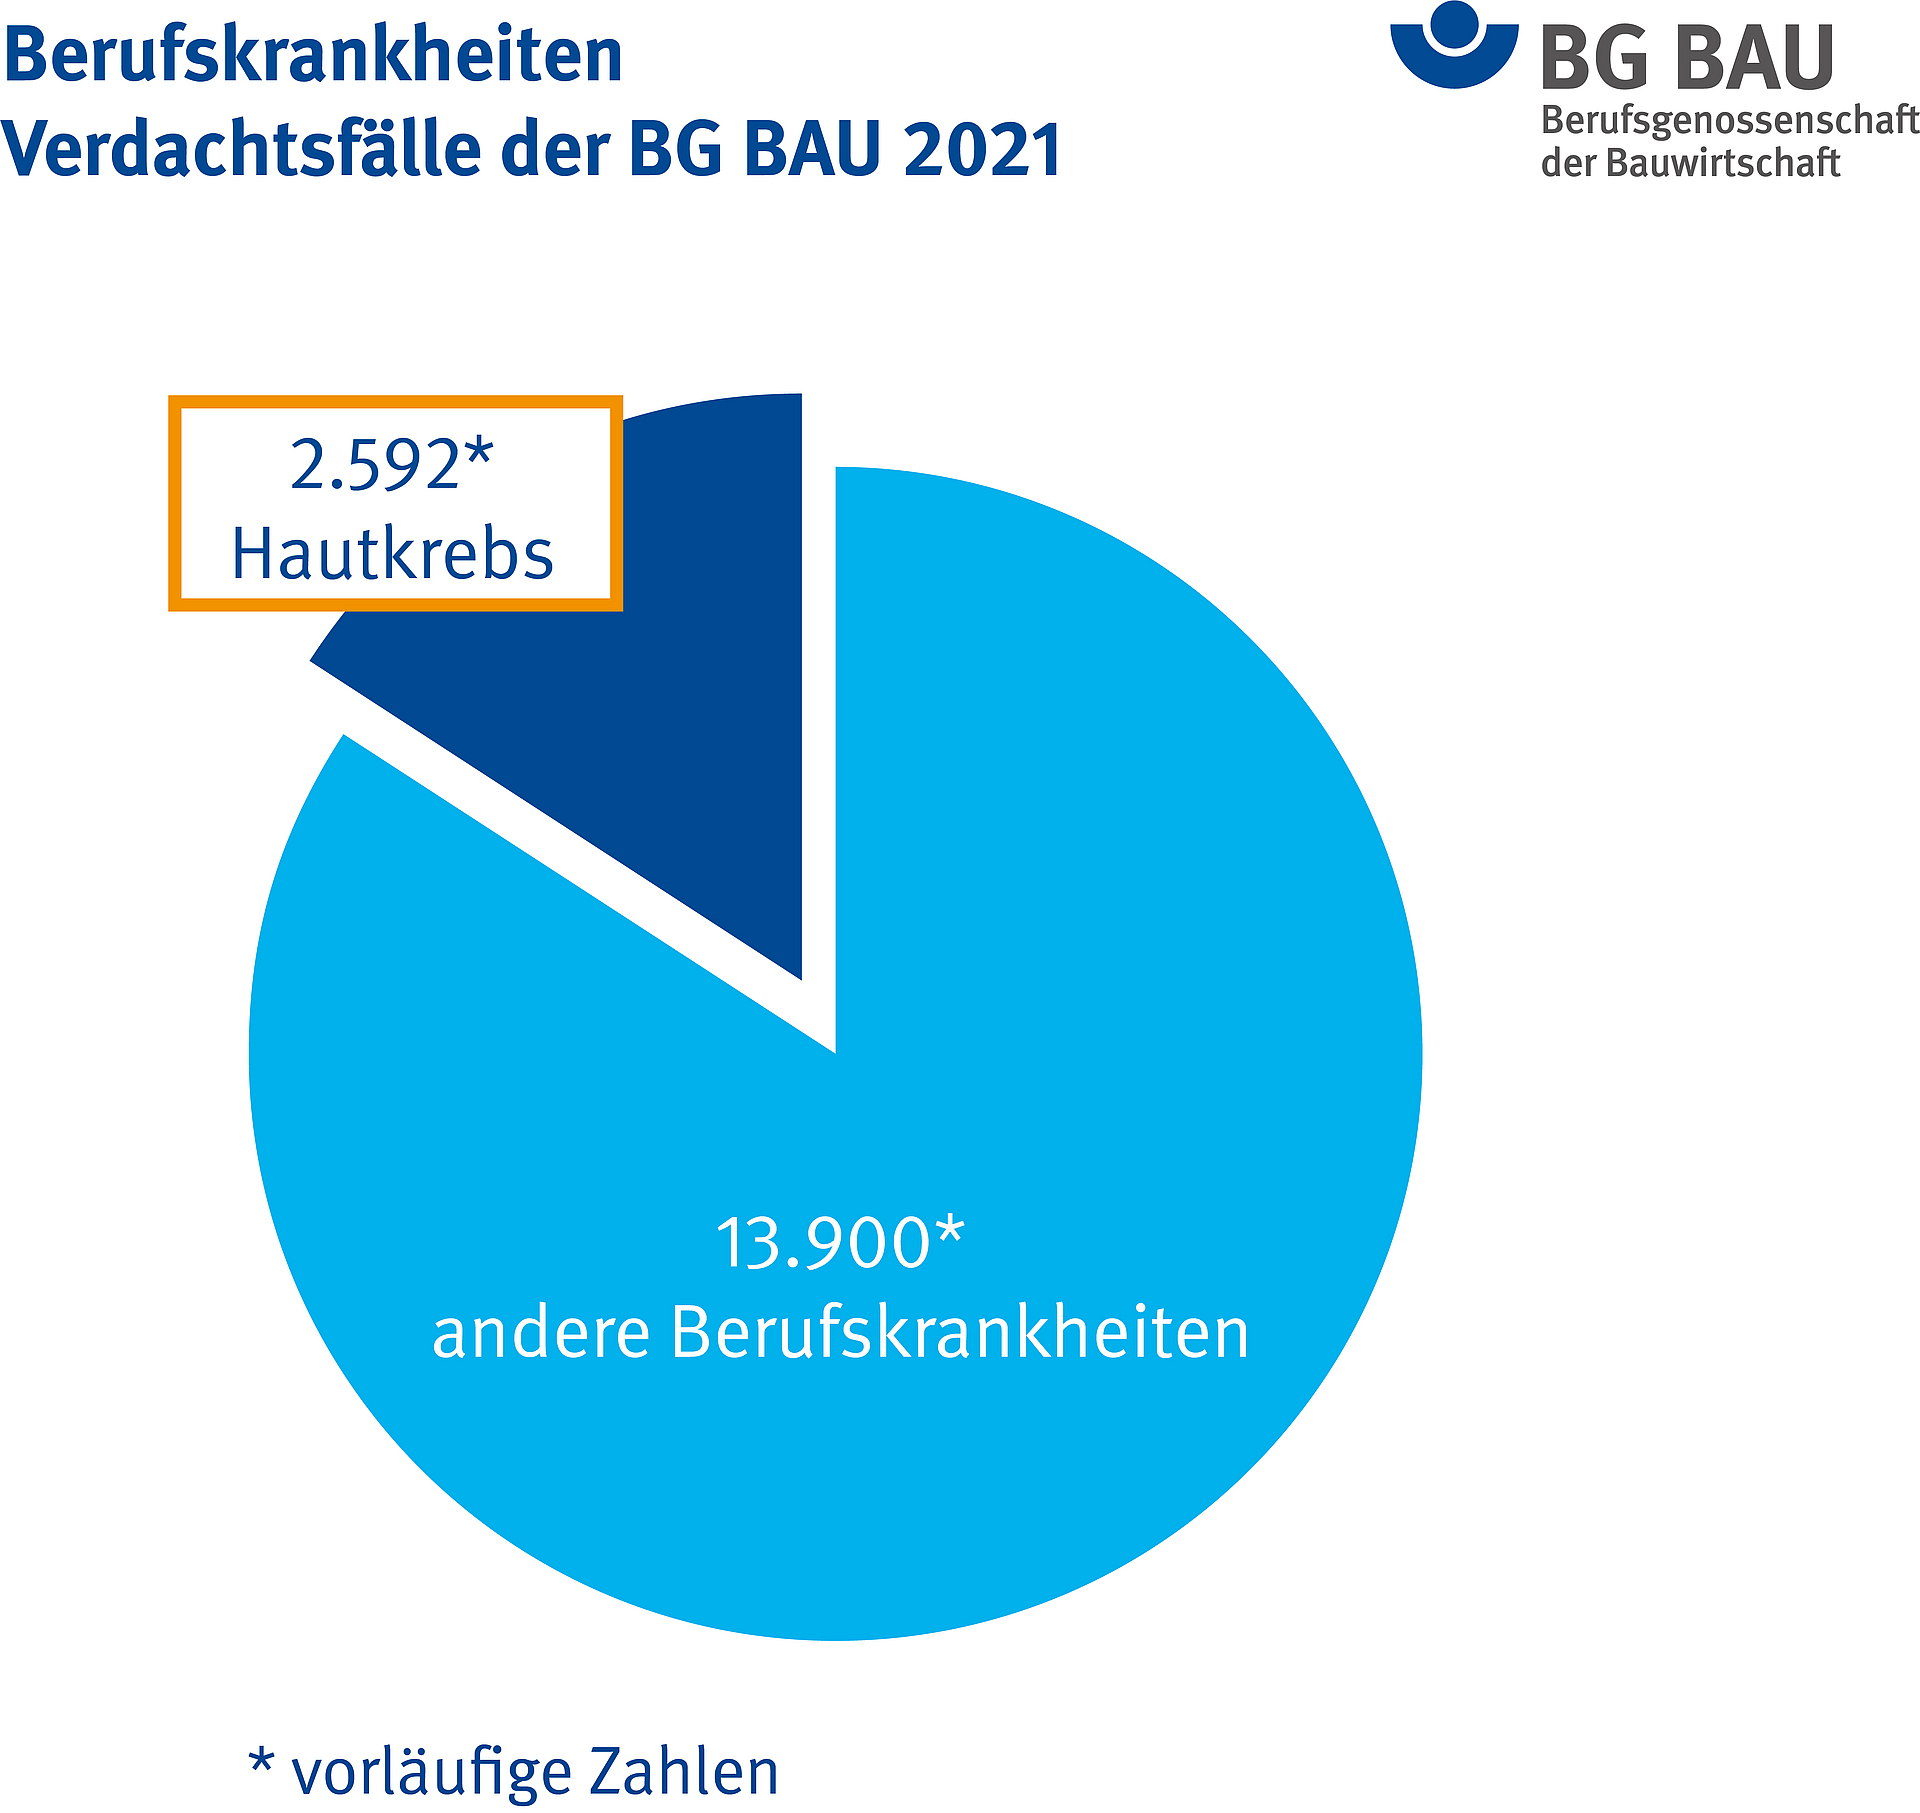 Tortendiagramm Anteil der Berufskrankheit 5103 (Hautkrebs) an allen Berufskrankheiten der BG BAU - Verdachtsfälle 2021 beträgt knapp 19 Prozent.